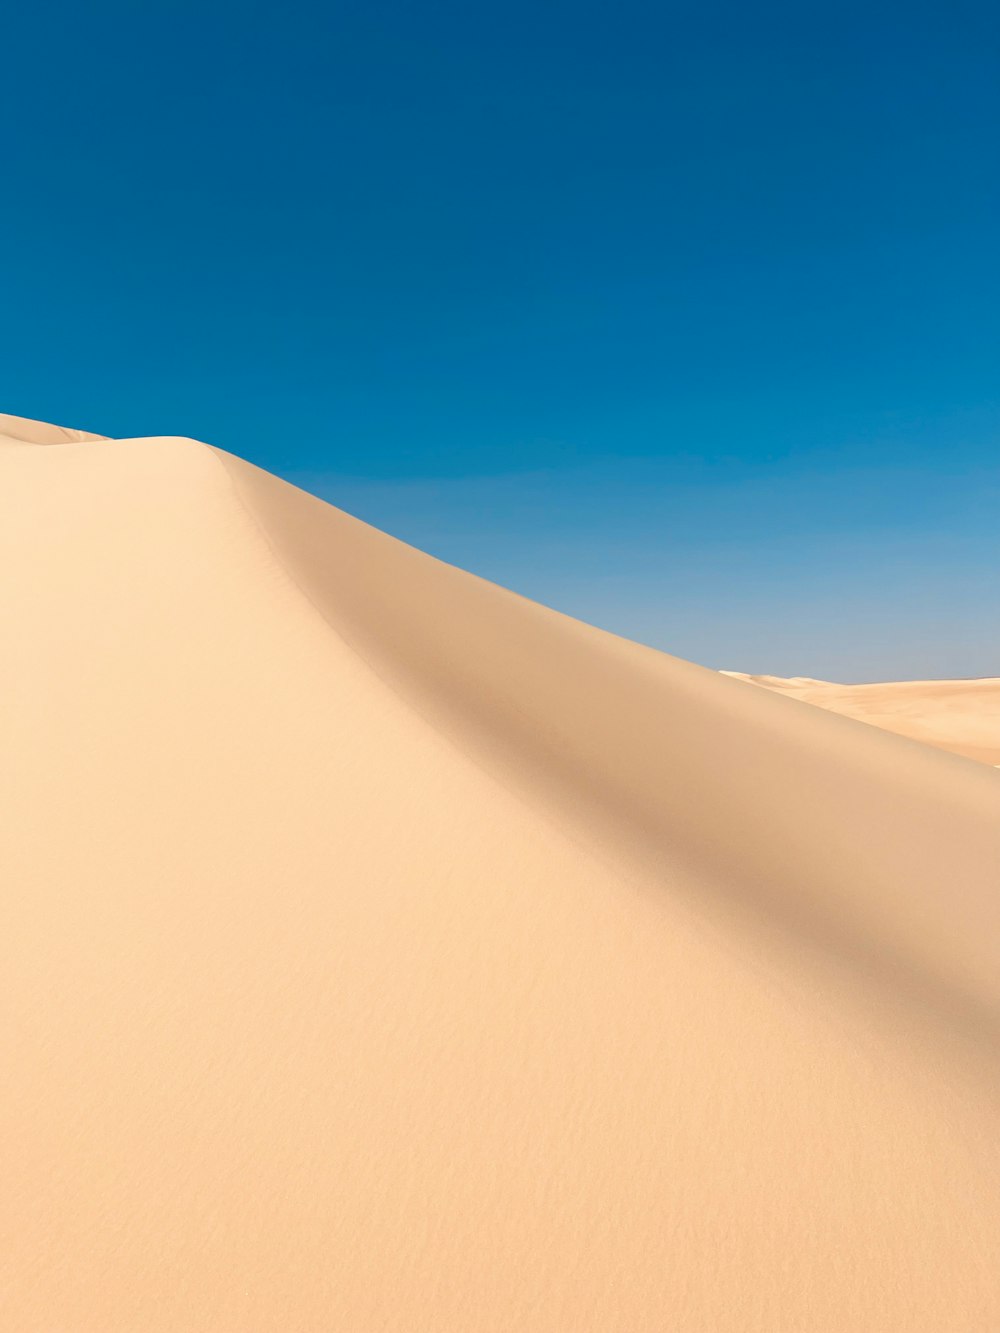 a sand dune under a blue sky